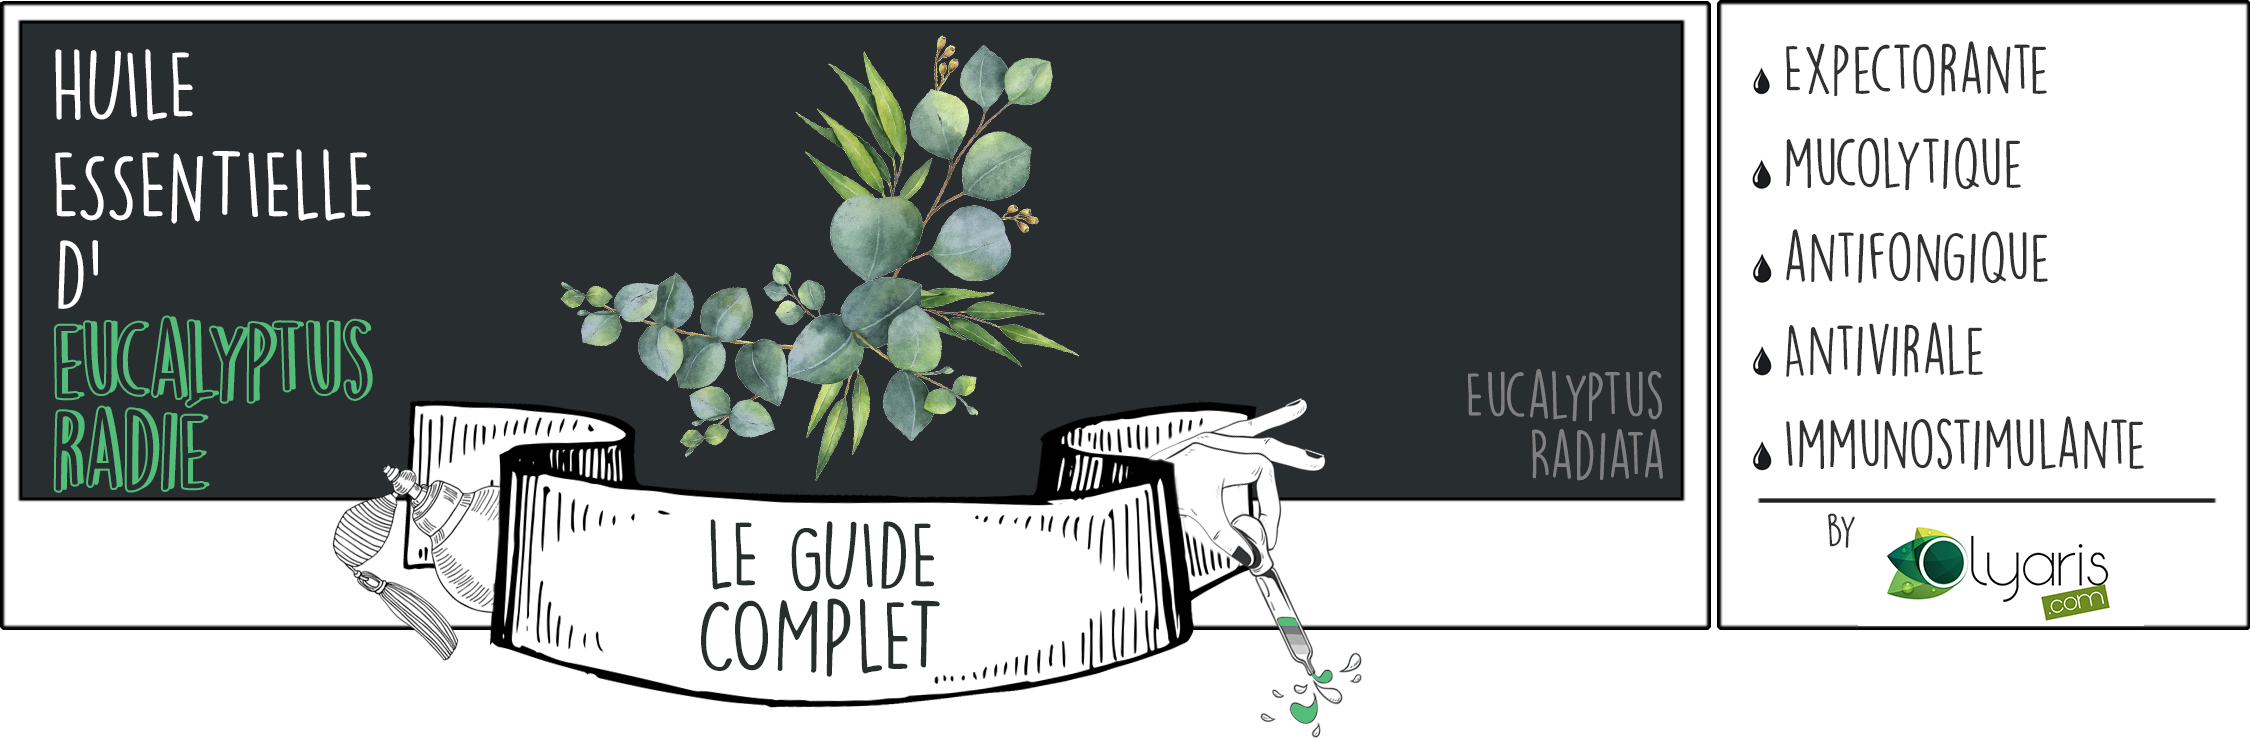 Huile Essentielle d’Eucalyptus Radié: le Guide Complet par Olyaris